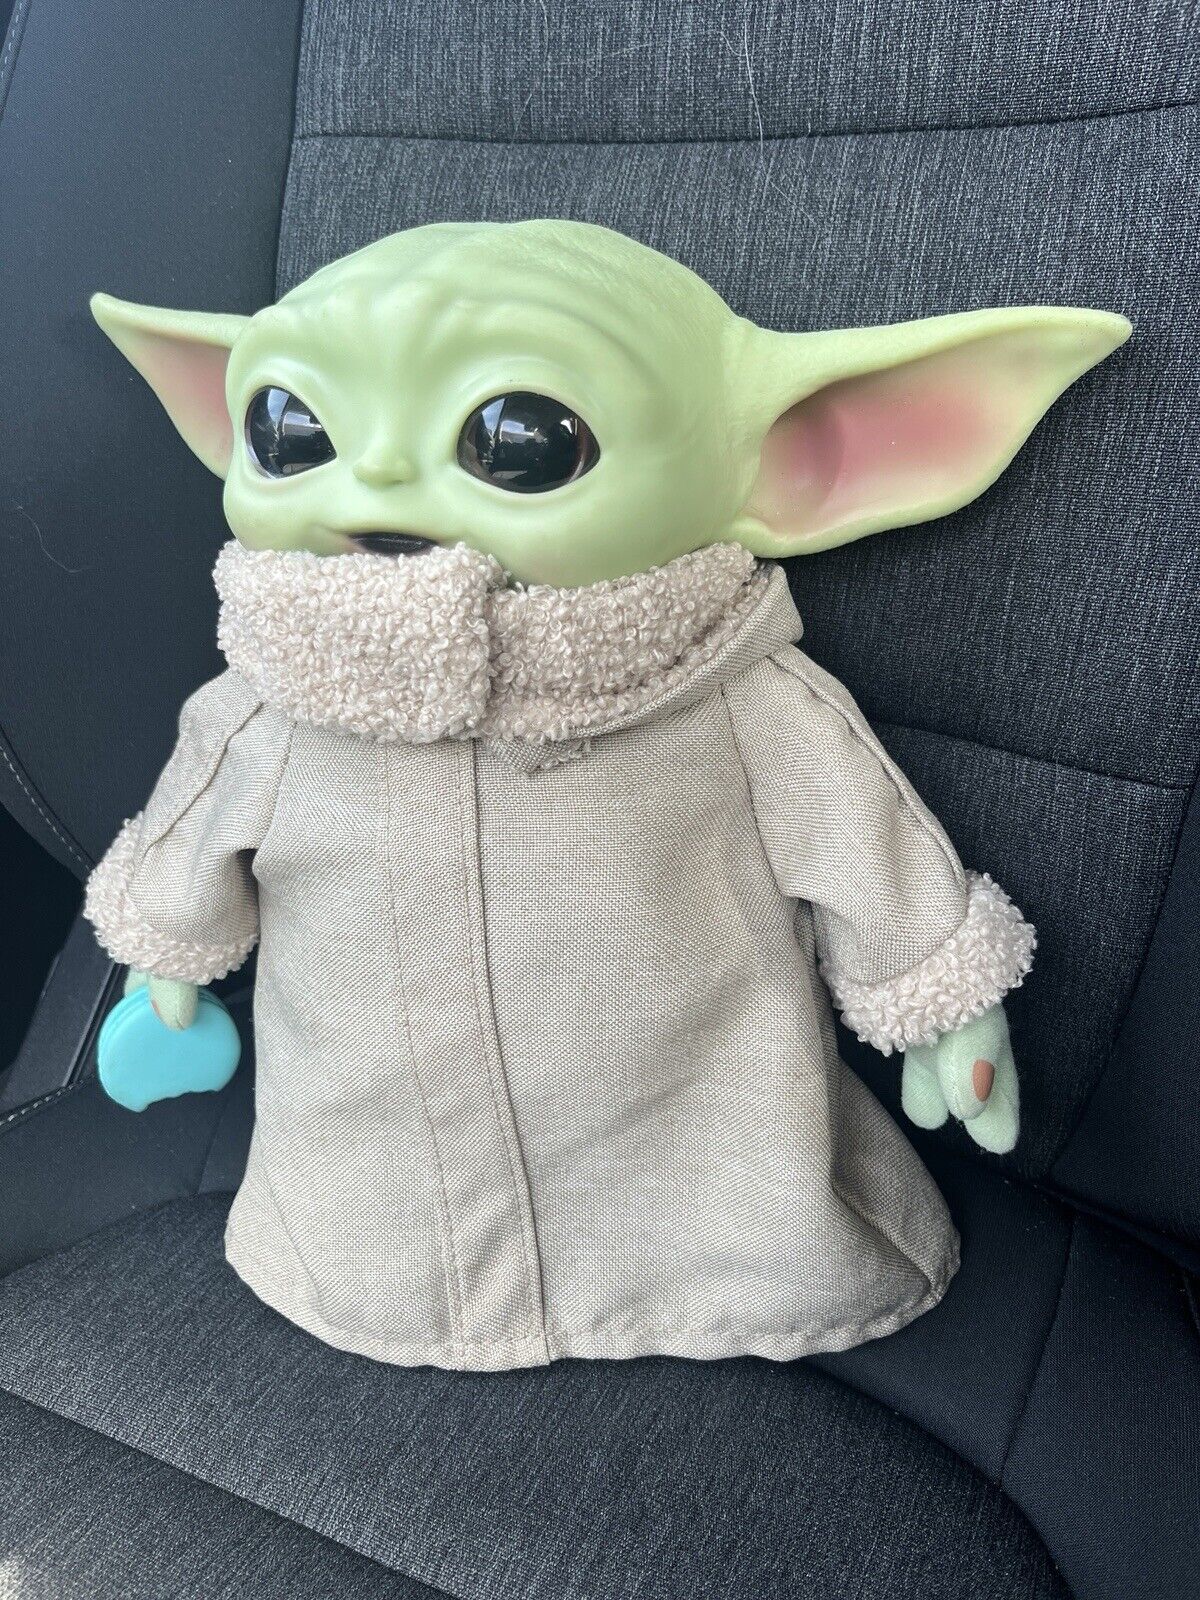 Star Wars Baby Yoda Child Mandalorian 11” Plush Toy Talking Figure MACAROON